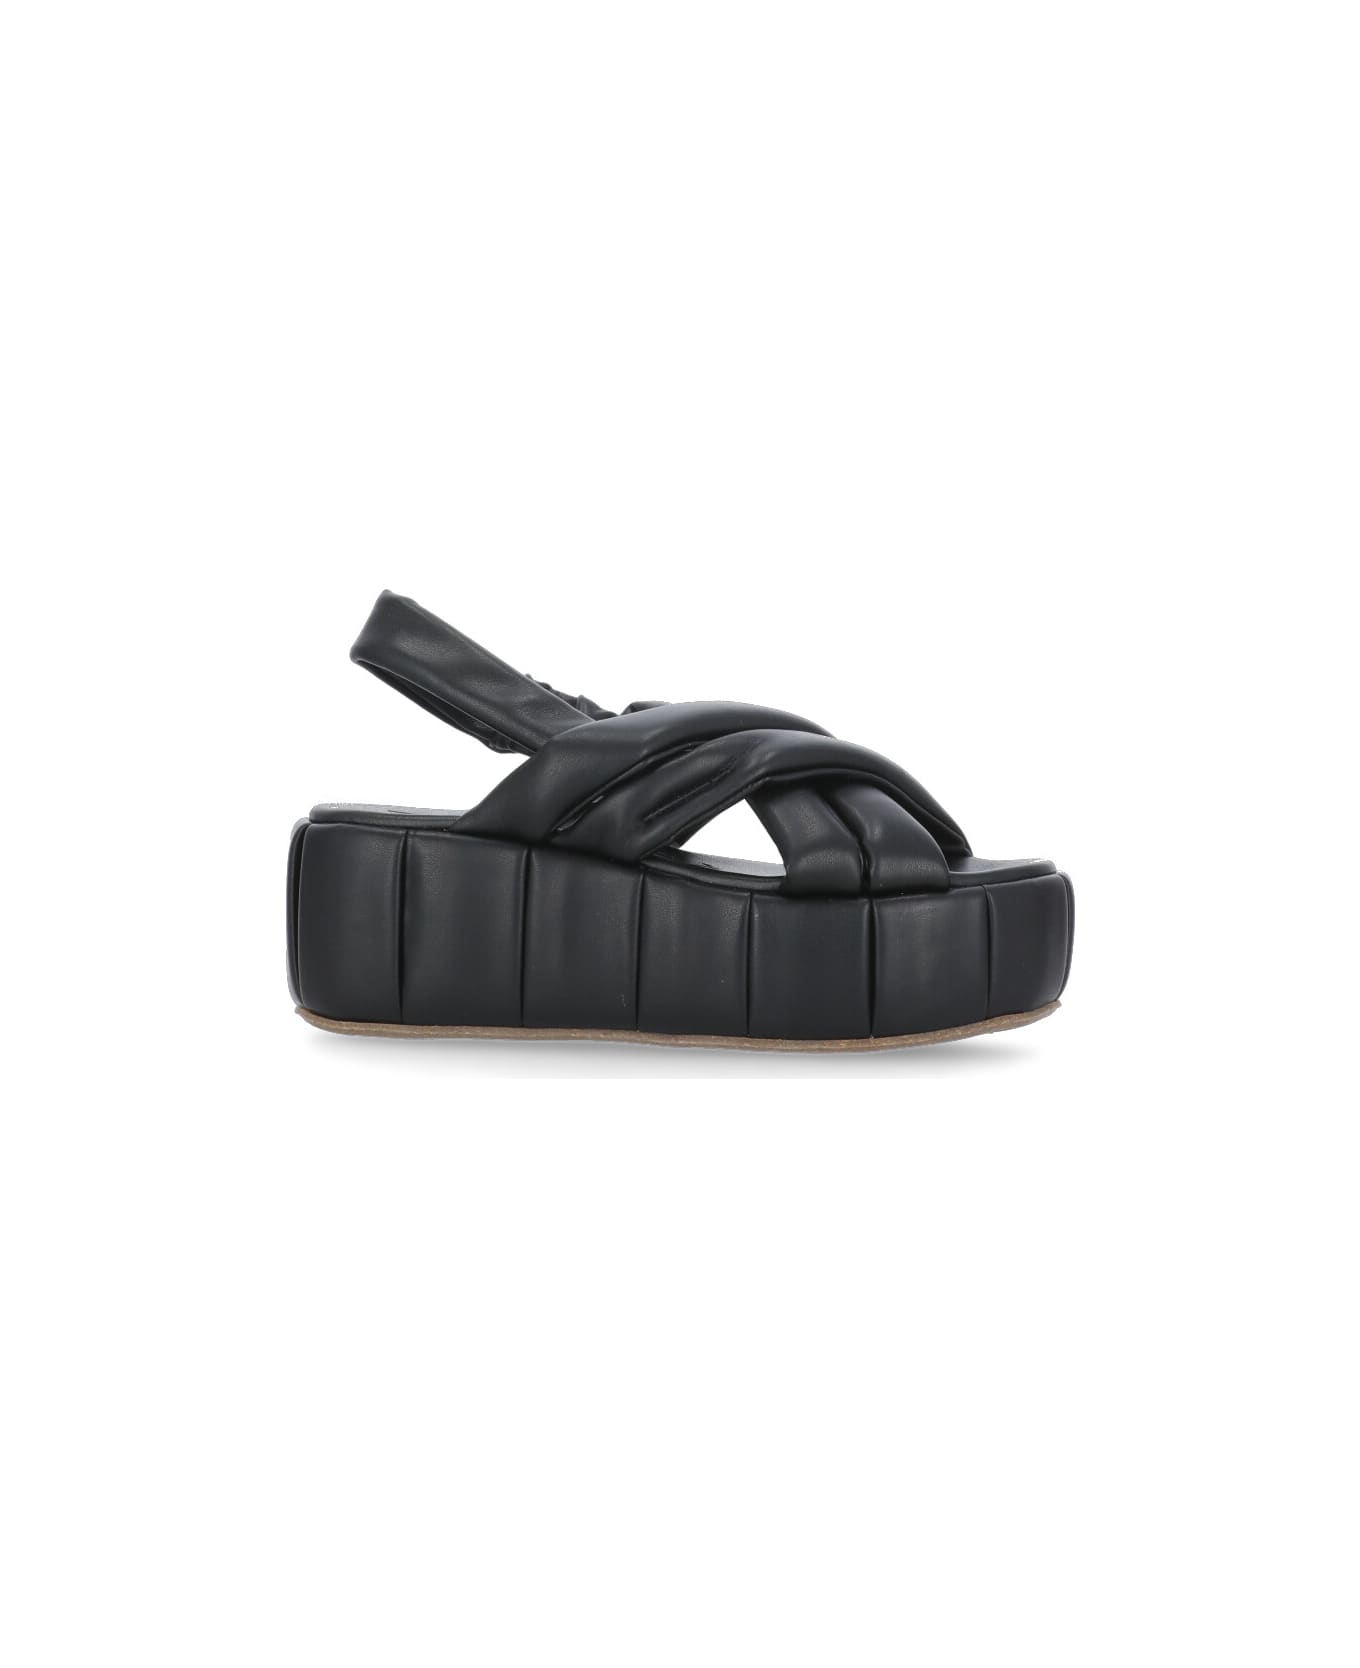 THEMOIRè Acquaria Platform Sandals - Black サンダル